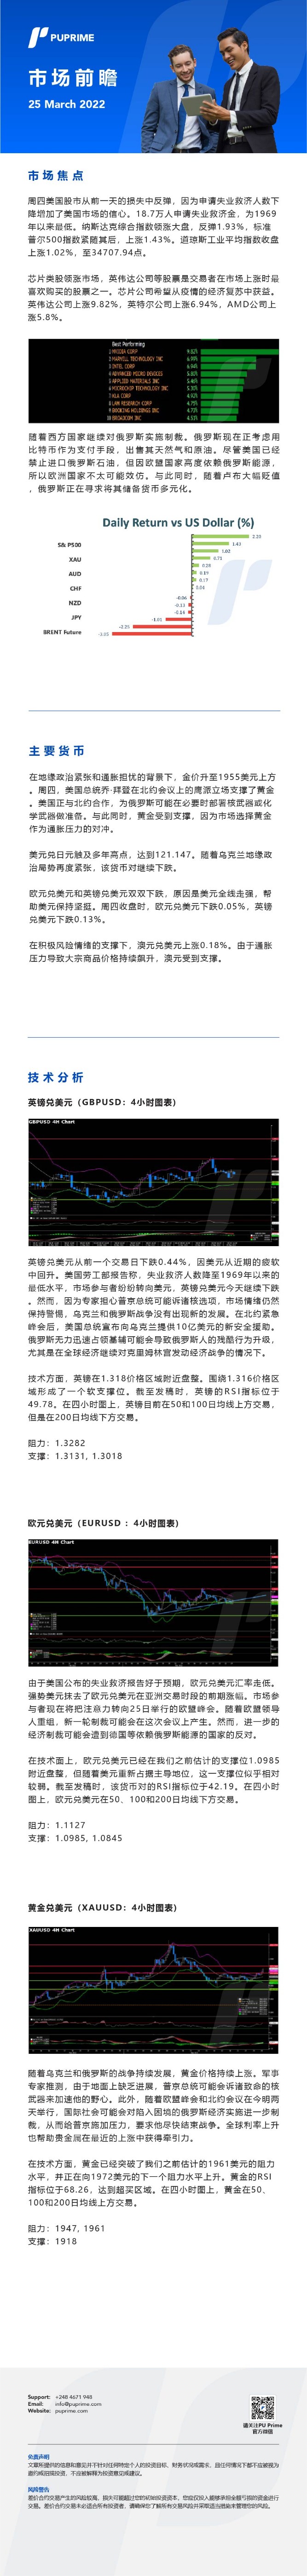 25032022 Daily Market Analysis__CHN.jpg